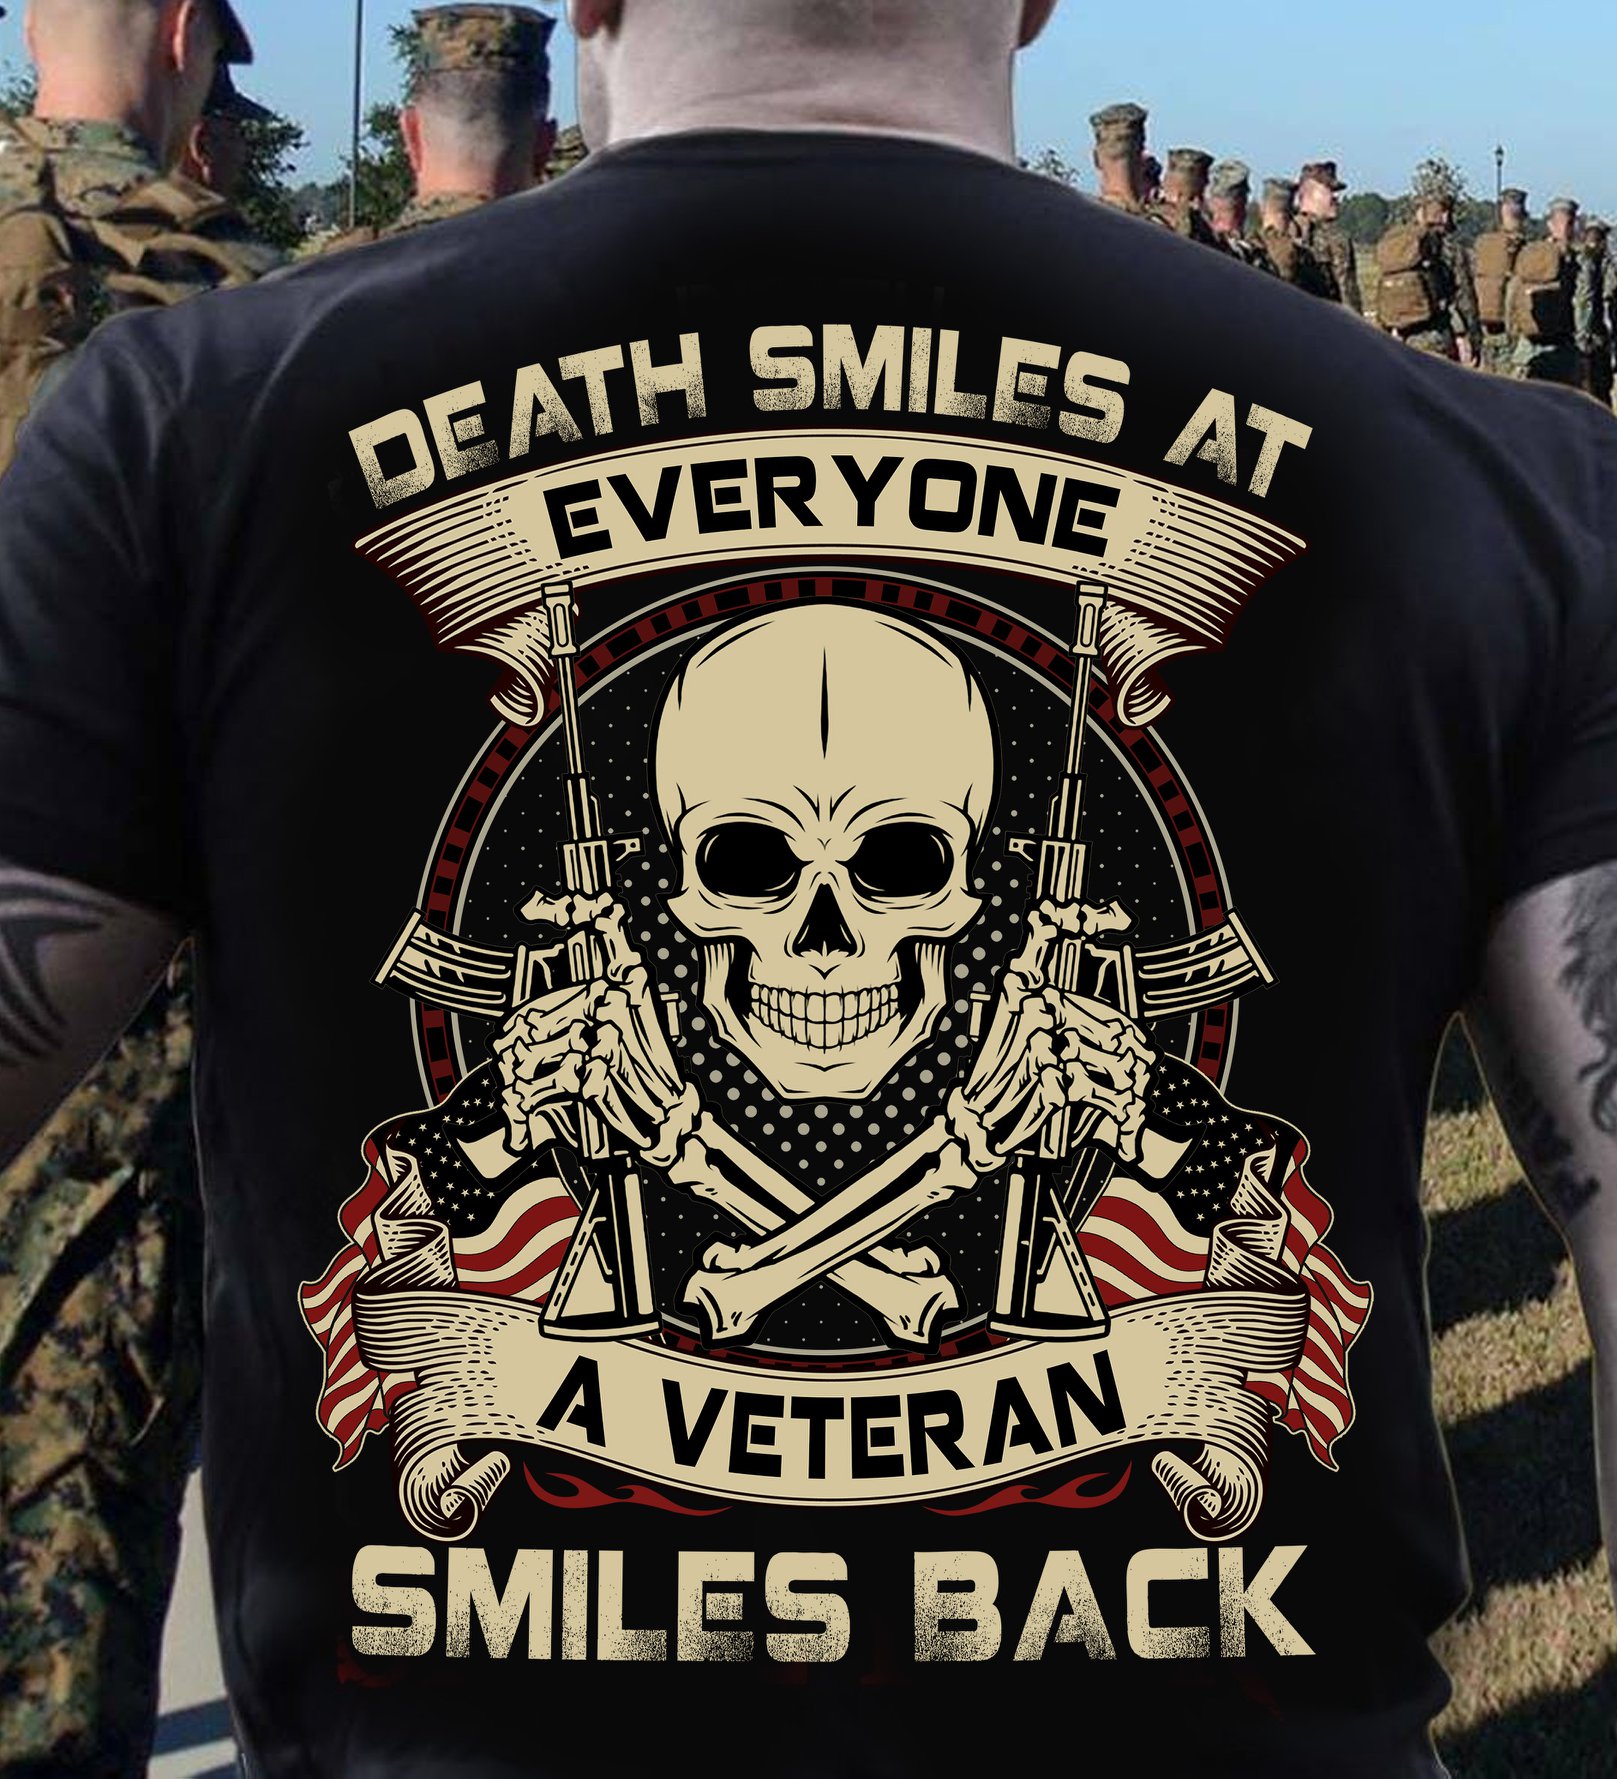 Death smiles at everyone a veteran smiles back - Skullcap veteran